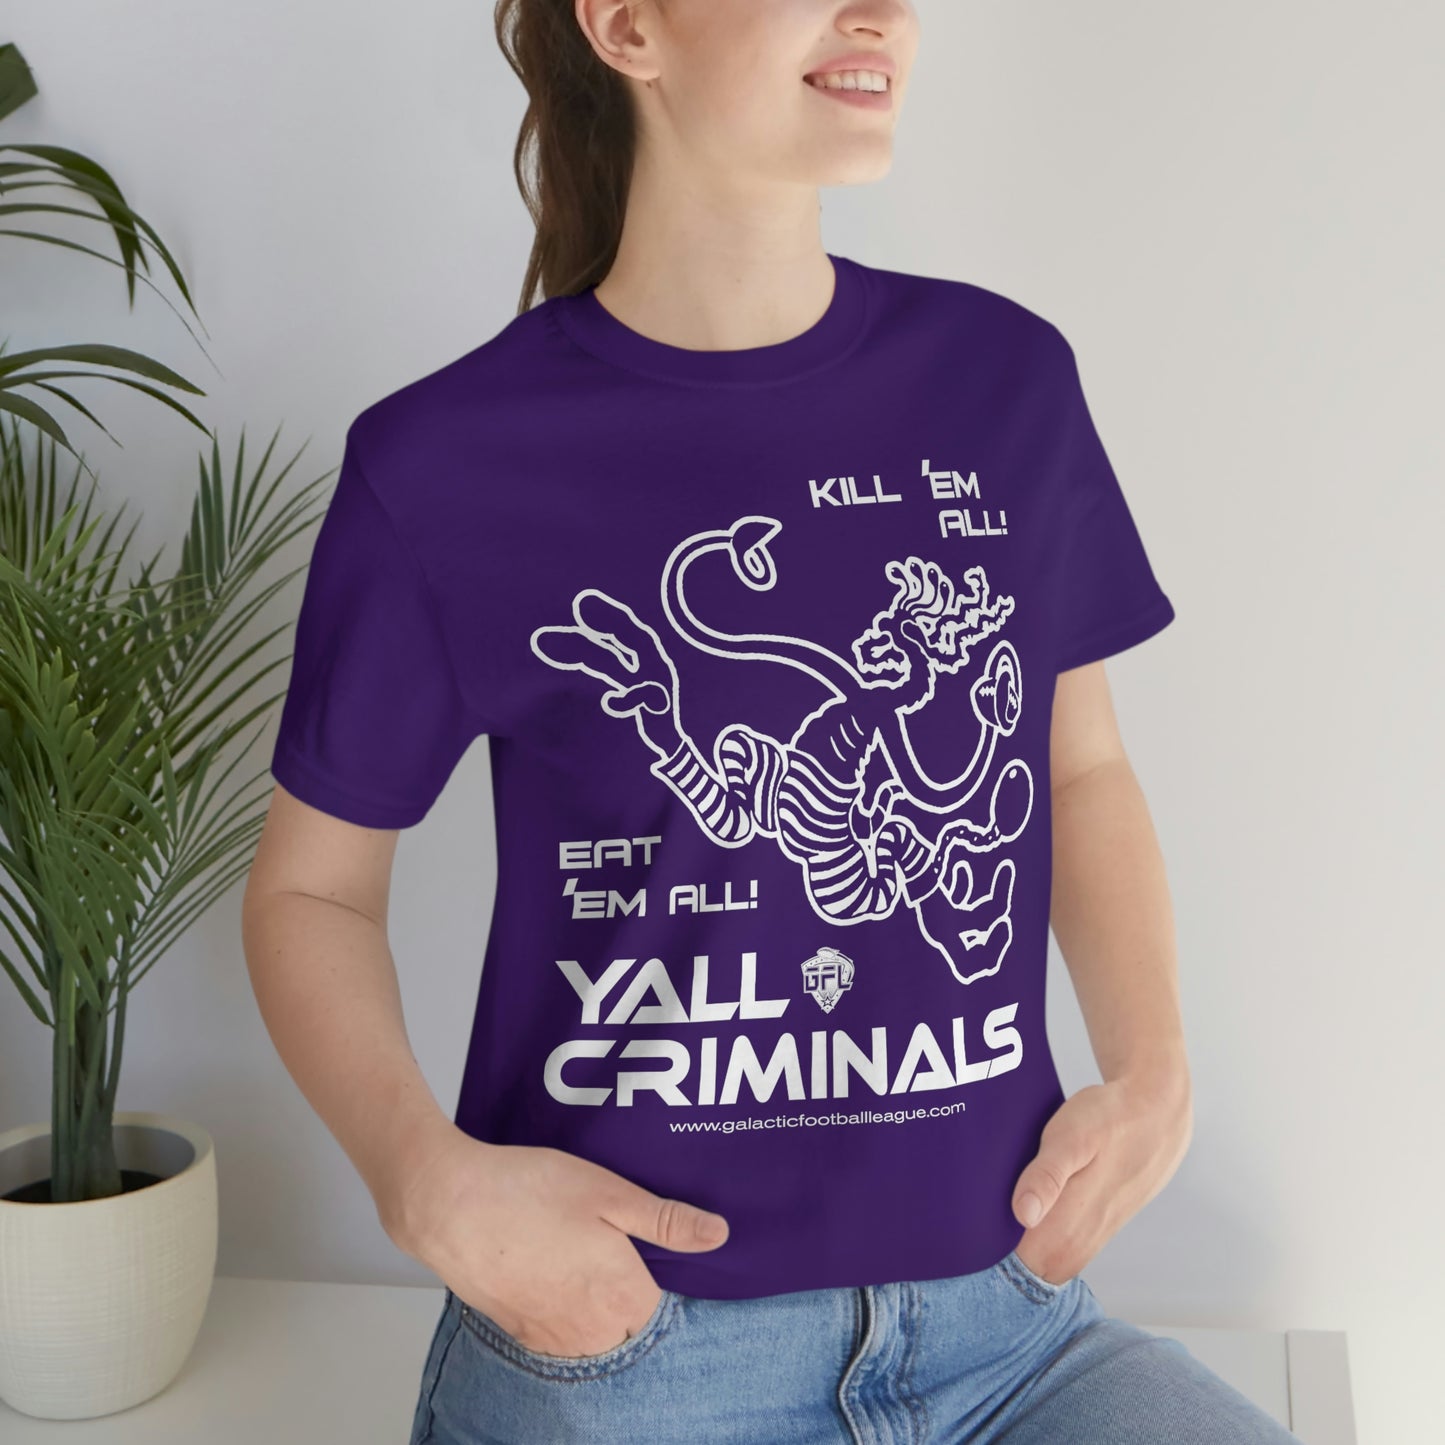 Yall Criminals